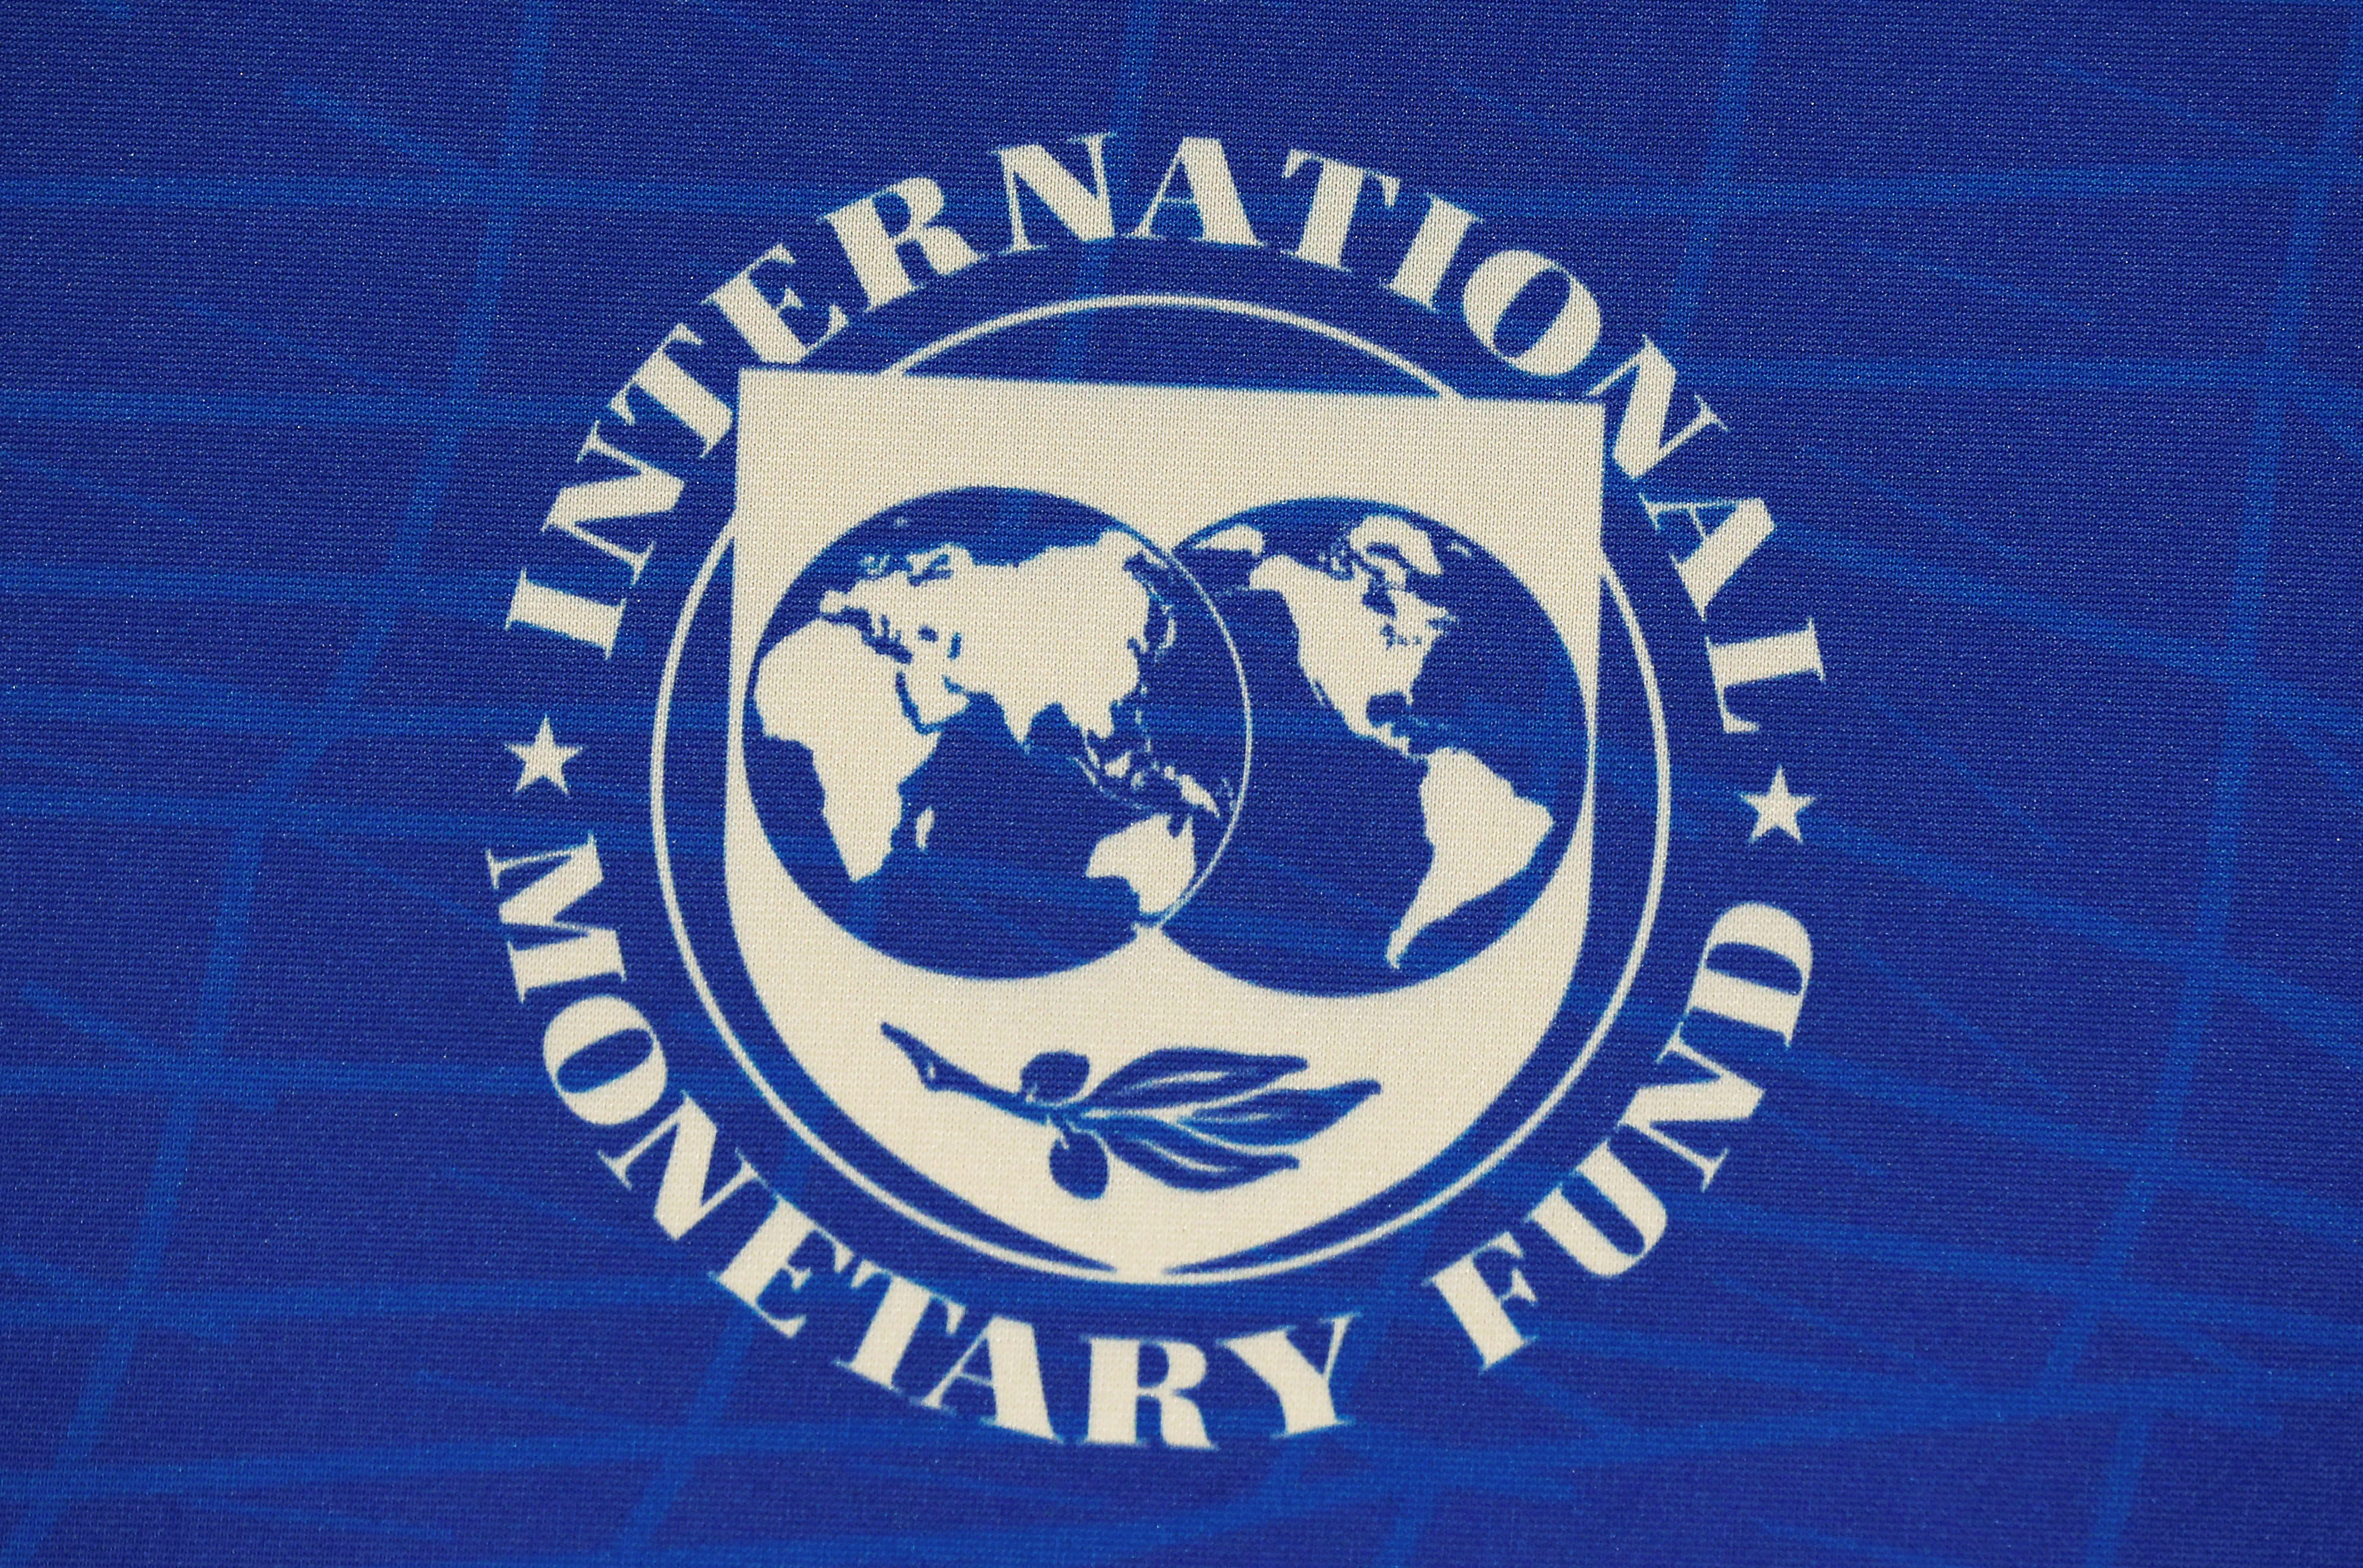 Δημοσιονομικό κενό βλέπει το ΔΝΤ για το 2020, αλλά βασίζεται σε παρωχημένα στοιχεία